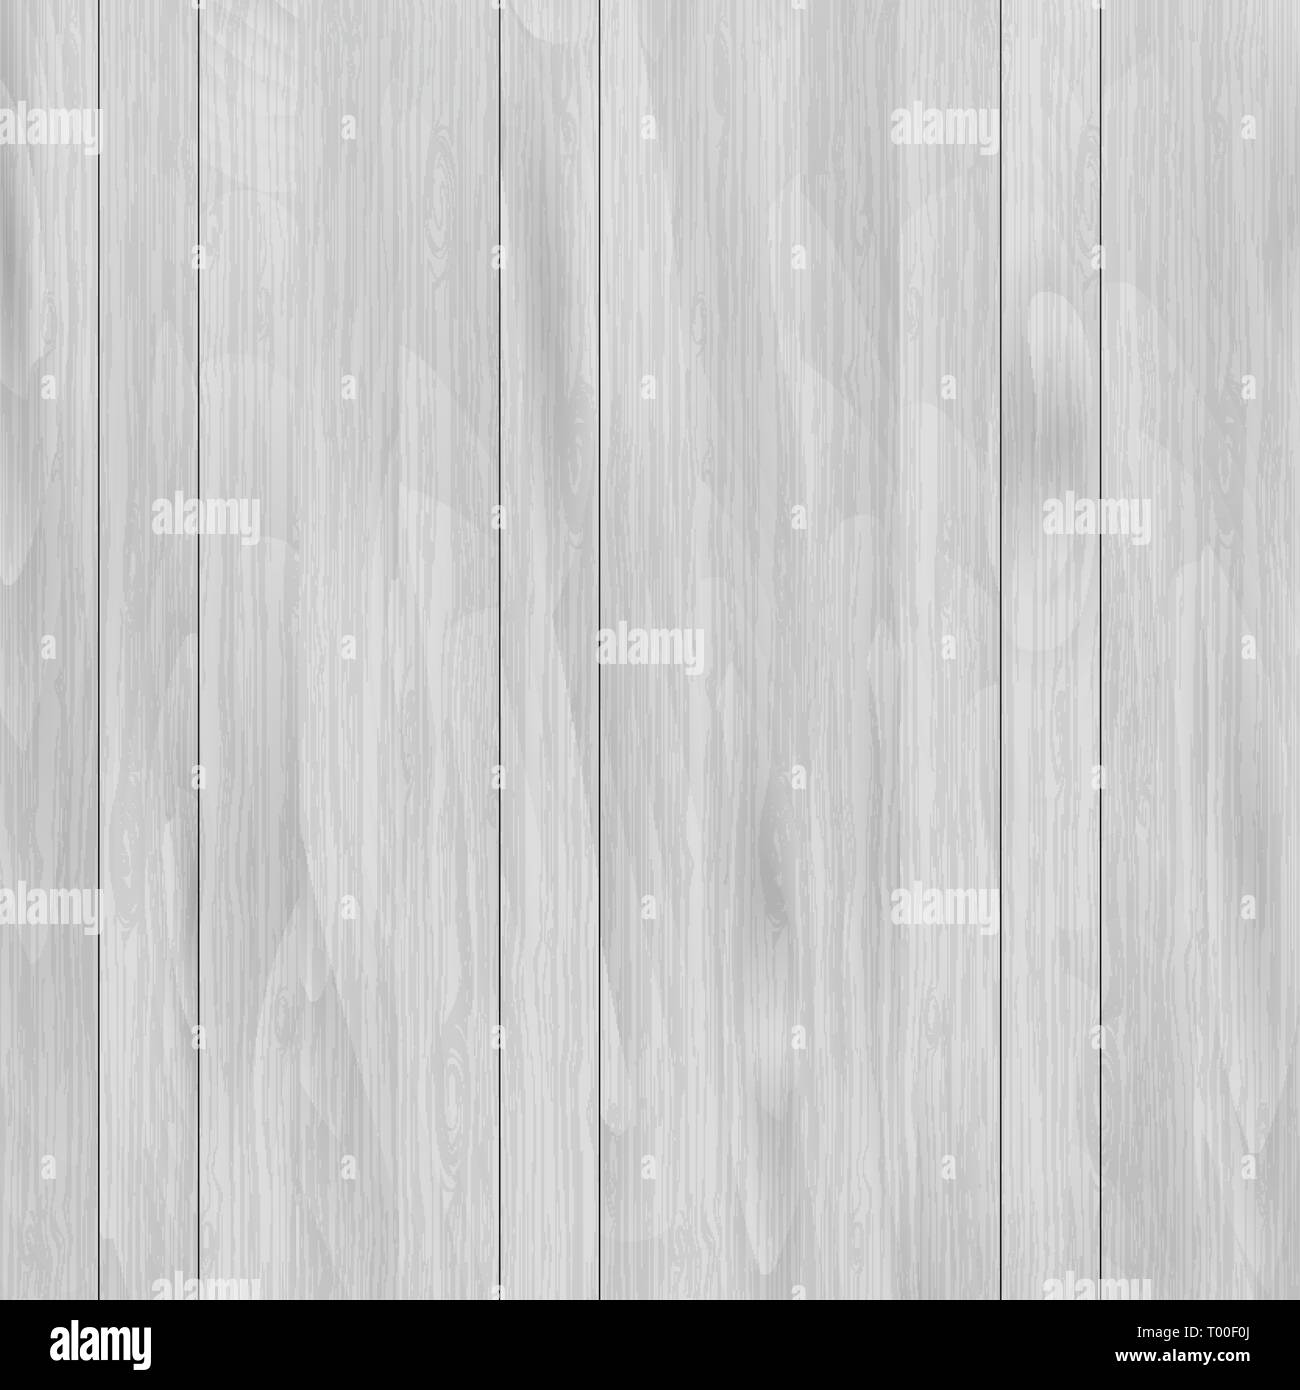 Wood texture background vector Stock Vector